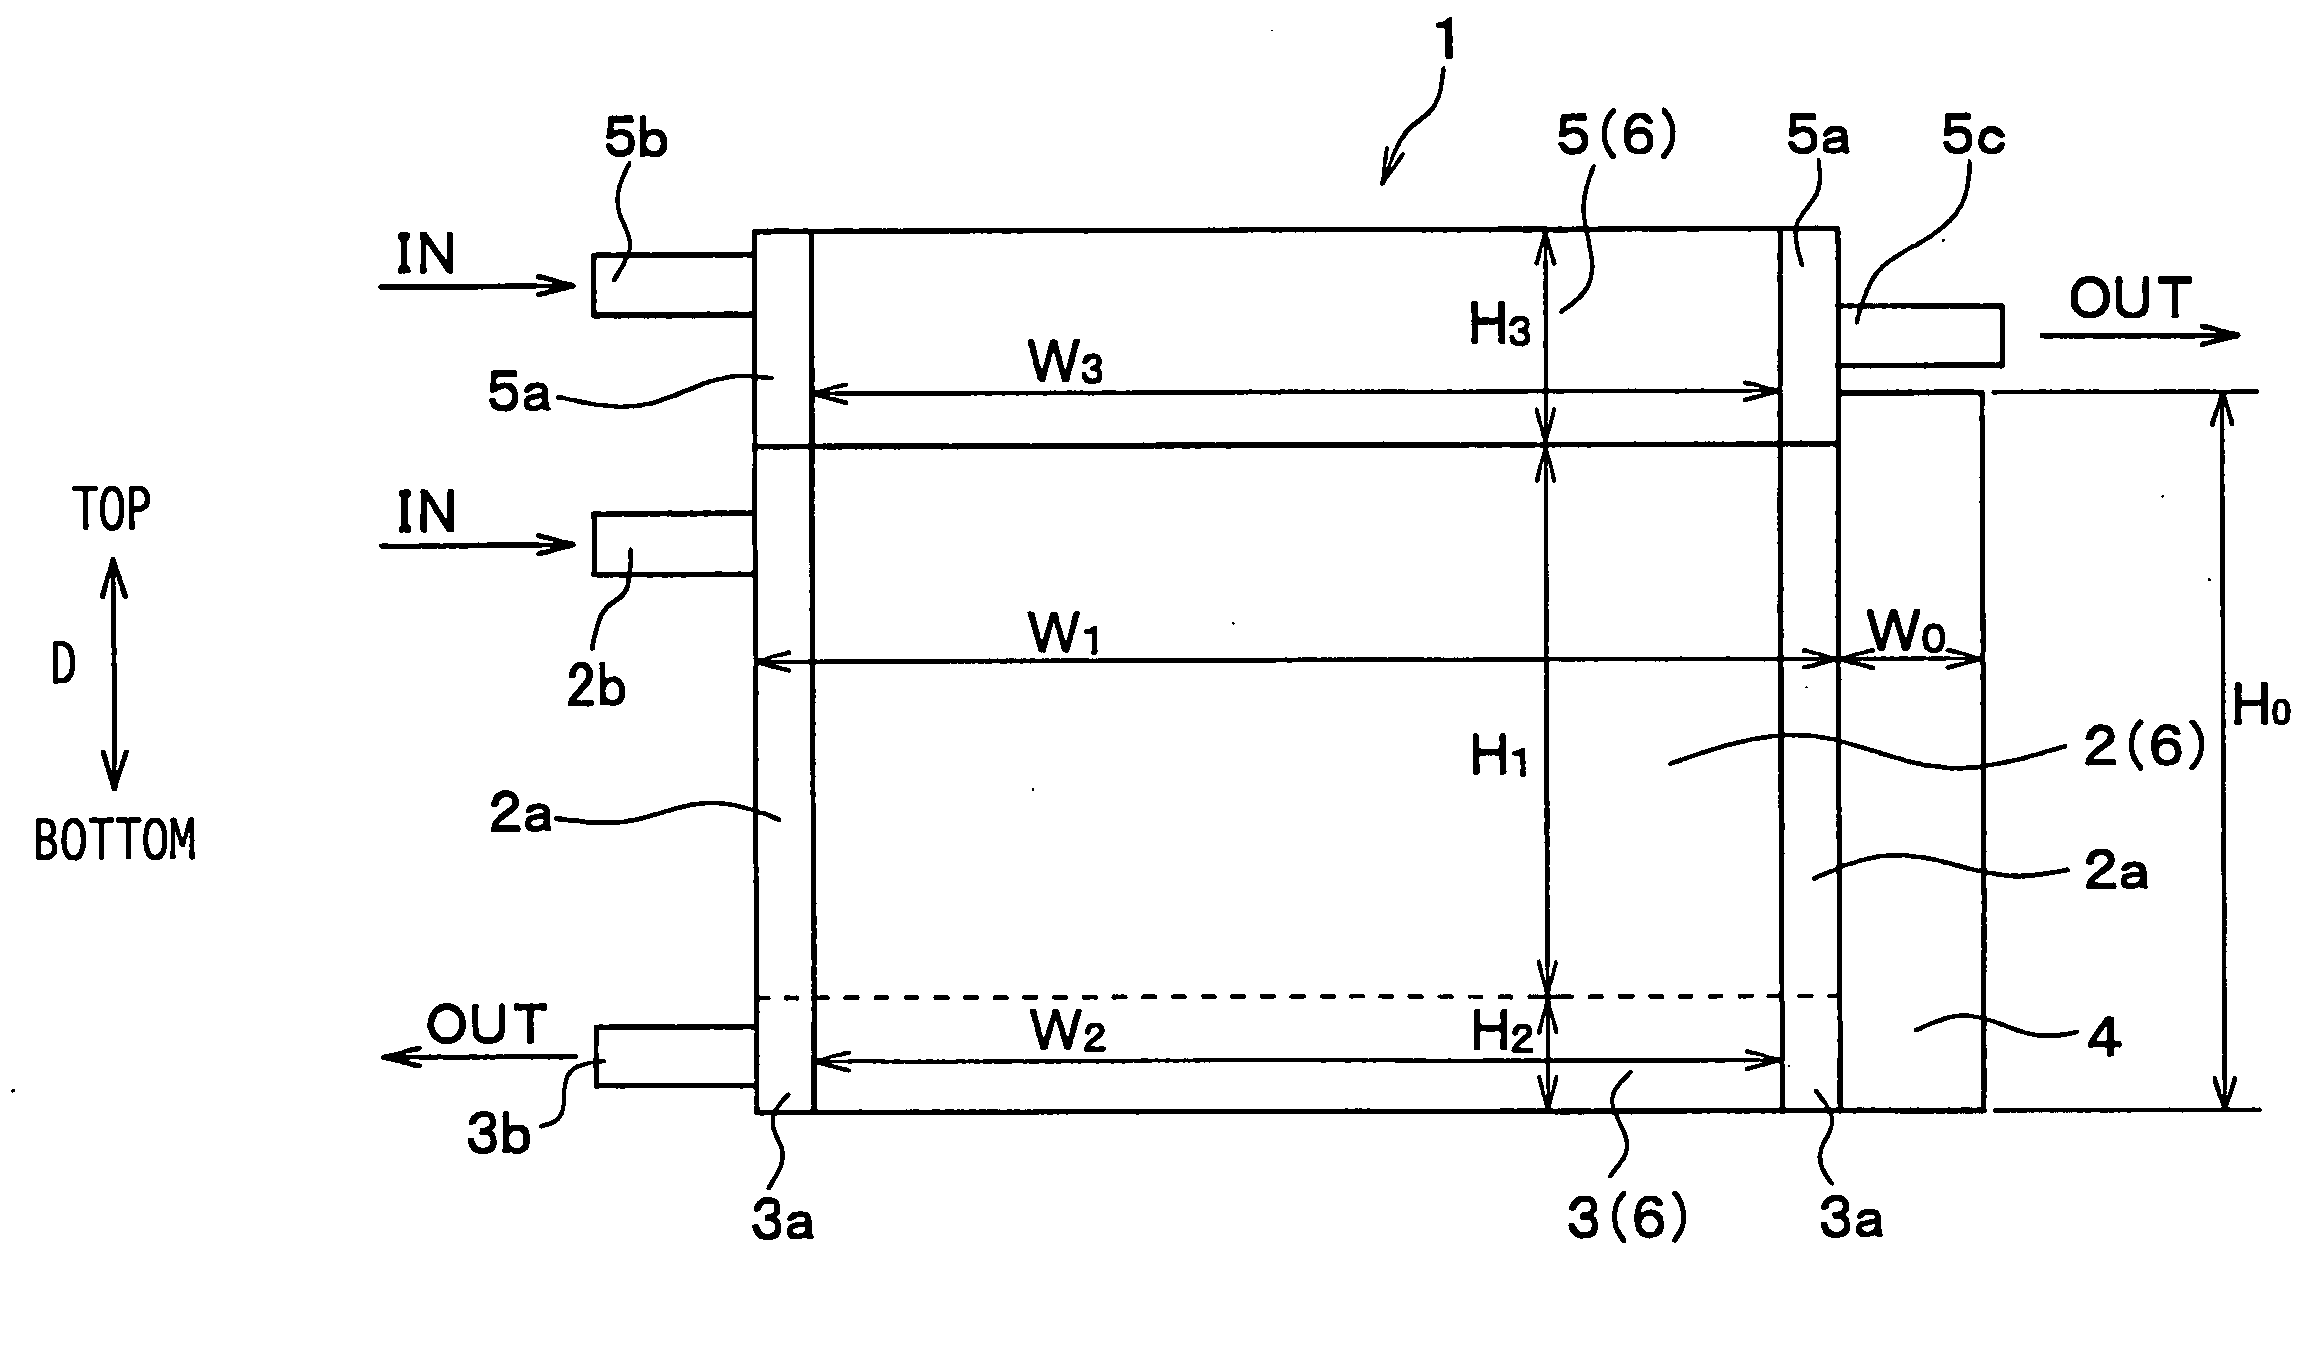 Heat exchanger module